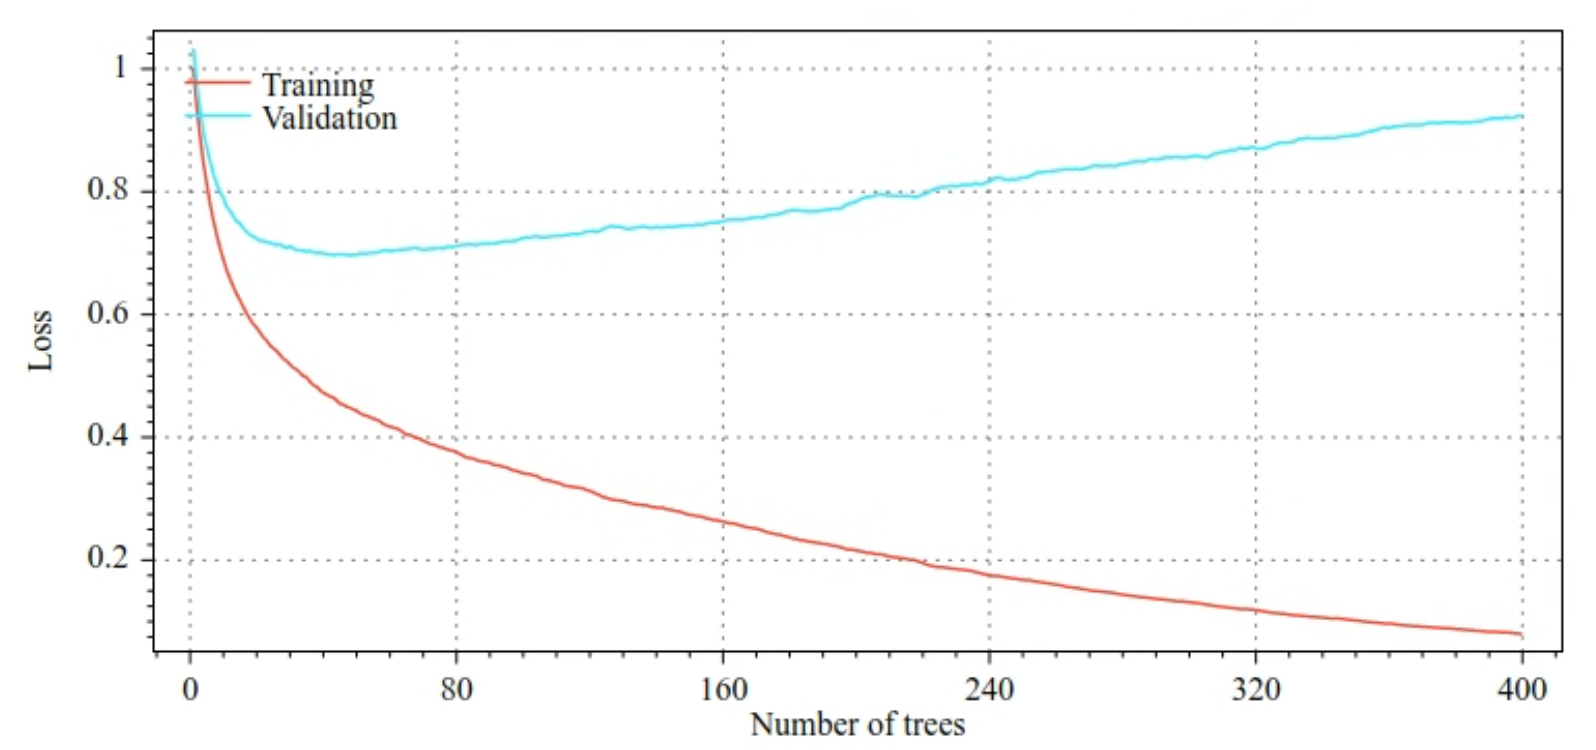 ट्रेनिंग में कमी और पुष्टि न कर पाने के प्लॉट बनाम फ़ैसला लेने वाले पेड़ों की संख्या. जैसे-जैसे डिसीज़न ट्री बढ़ता जाता है, ट्रेनिंग का लेवल भी बढ़ता जाता है. हालांकि, पुष्टि करने में होने वाली कमी सिर्फ़
  40 फ़ैसले वाले पेड़ों तक घटती है. 40 से ज़्यादा फै़सले होने के बाद, पुष्टि करने की प्रोसेस में असल में बढ़ोतरी होती है. 400 फ़ैसला लेने वाले पेड़ों के साथ, ट्रेनिंग से जुड़ी
  कमी और पुष्टि के अंतर के बीच का अंतर बहुत
  ज़्यादा है.